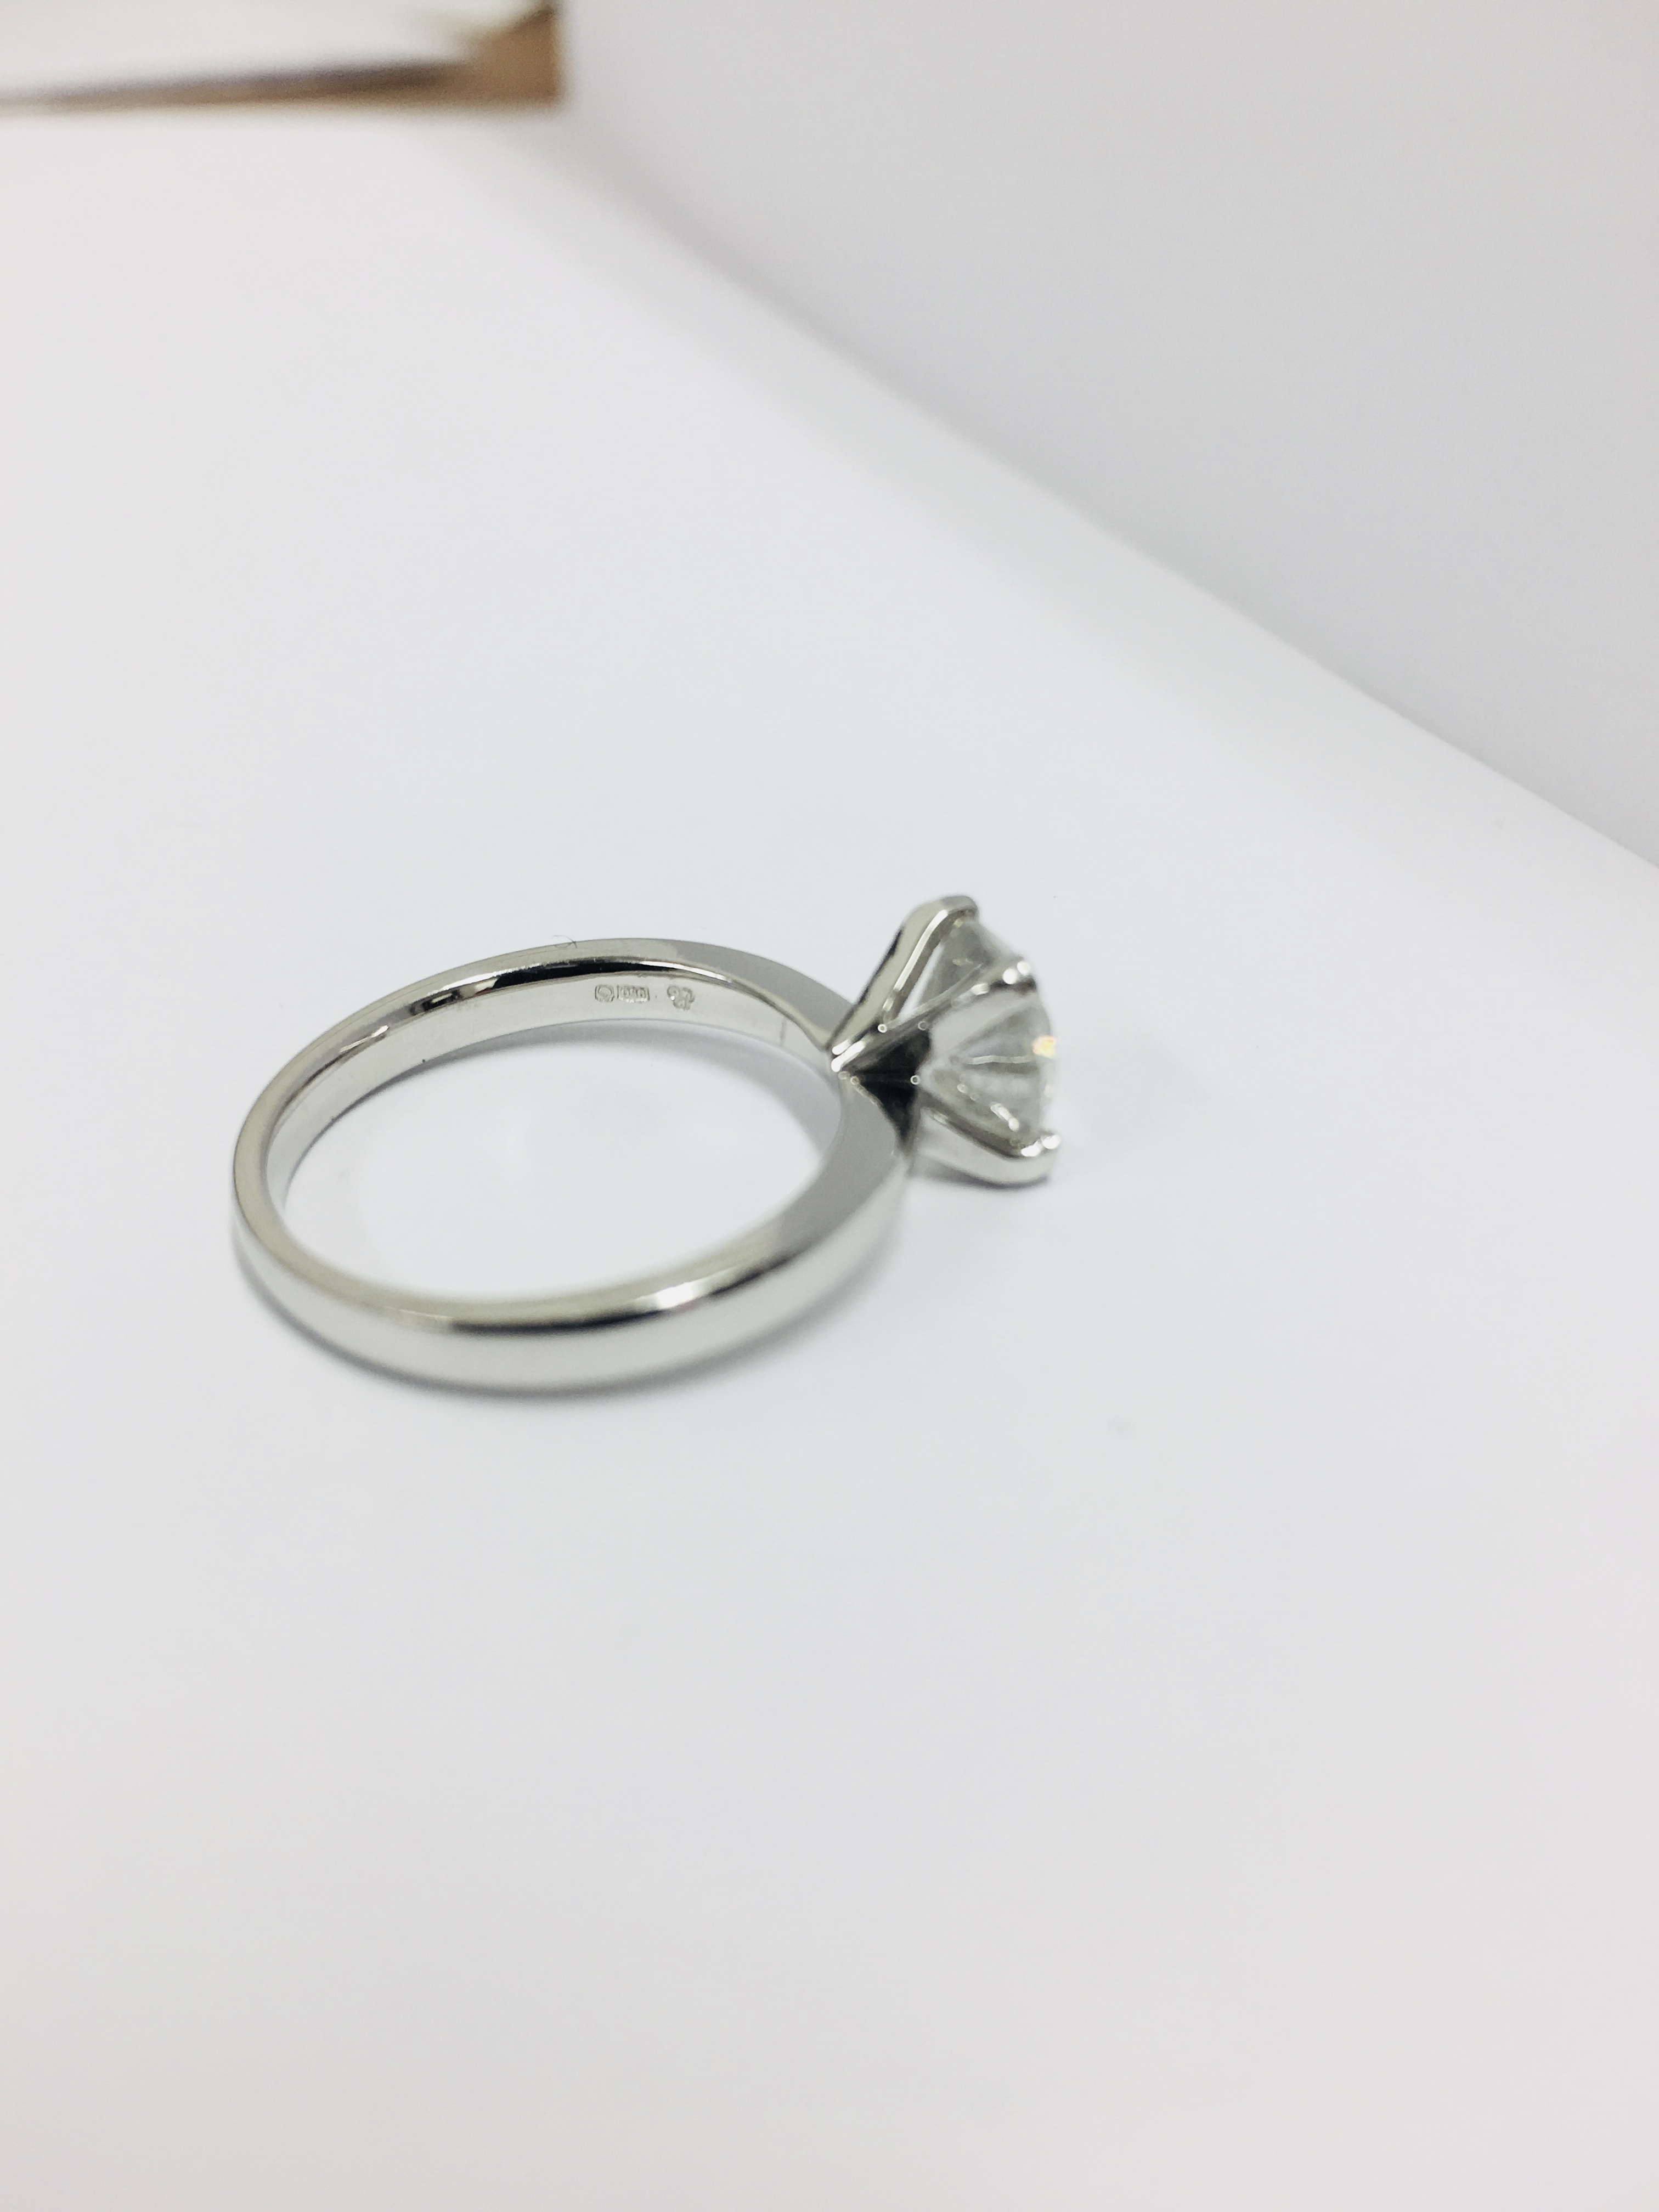 2.08ct diamond solitaire ring set in platinum - Image 48 of 48